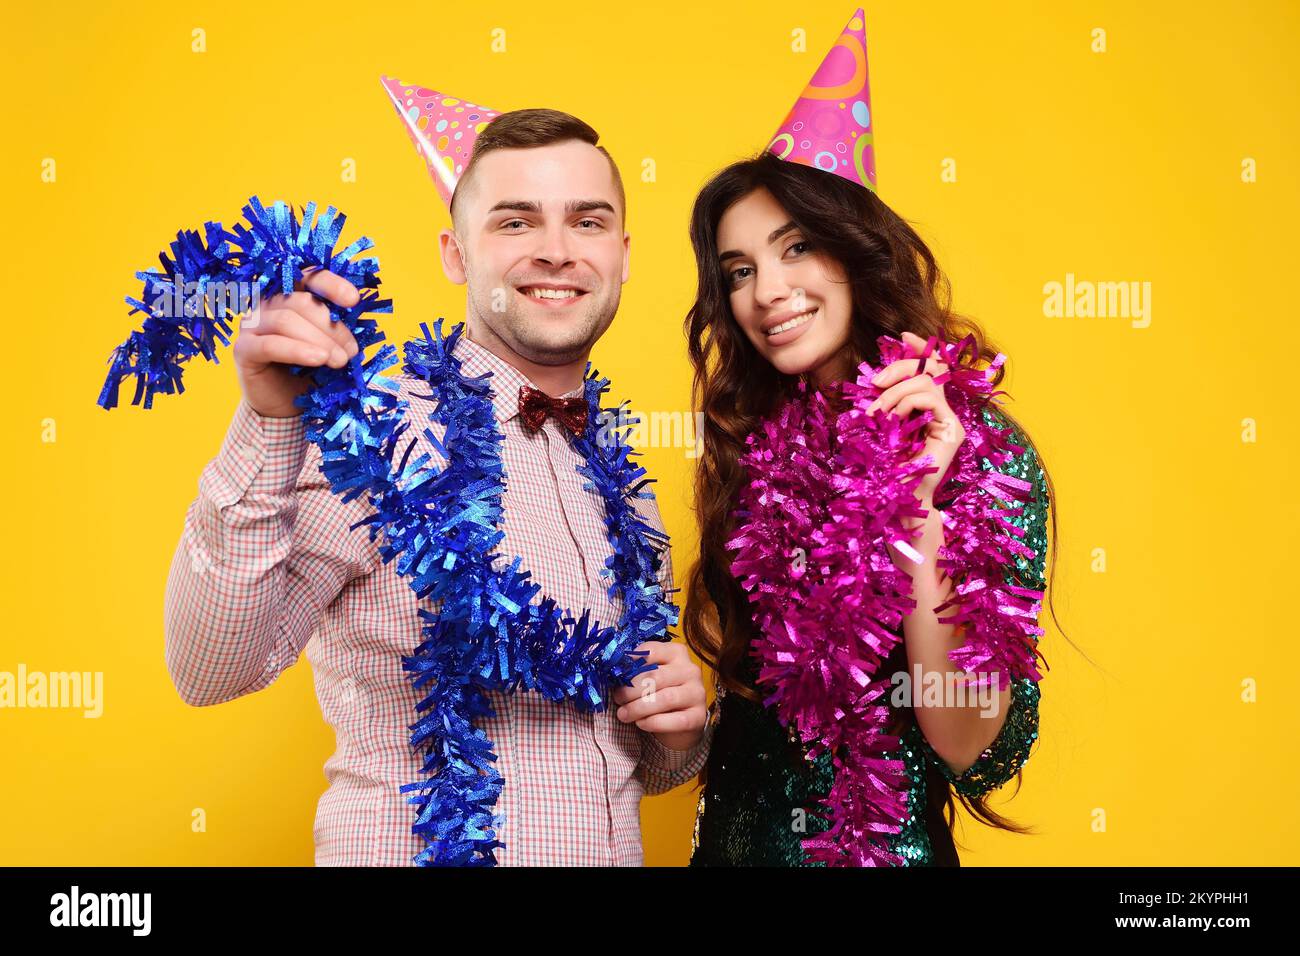 Mann und Frau in Partymütze und mit pinkfarbener und blauer Boa um den Hals, die auf gelbem Hintergrund lächelt Stockfoto